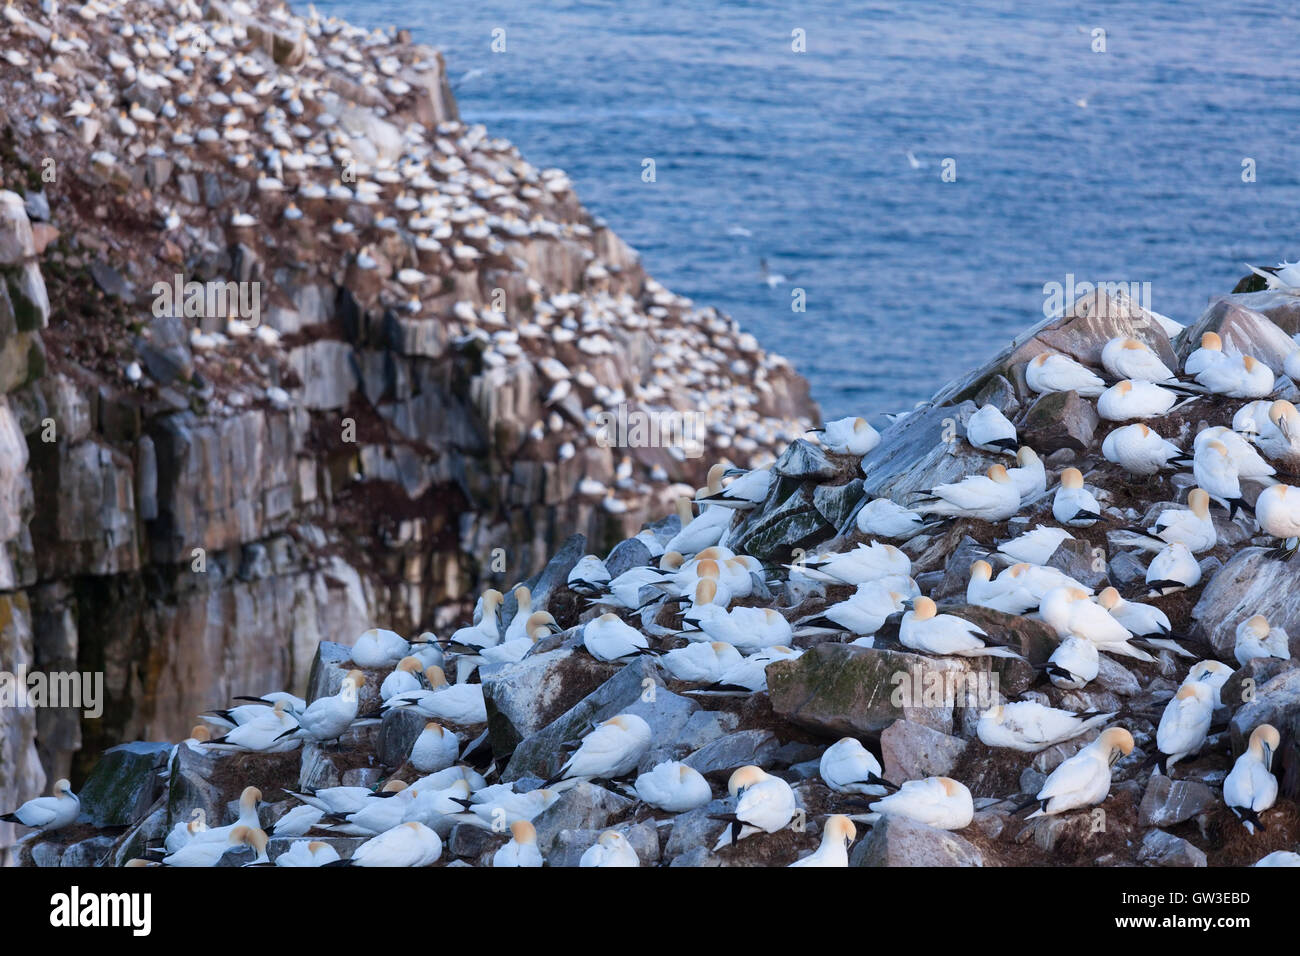 Alcatraces (Morus bassanus) encaramado en terrenos rocosos. El Cabo de Santa María en la Reserva Ecológica, Newfoundland, Canadá. Foto de stock